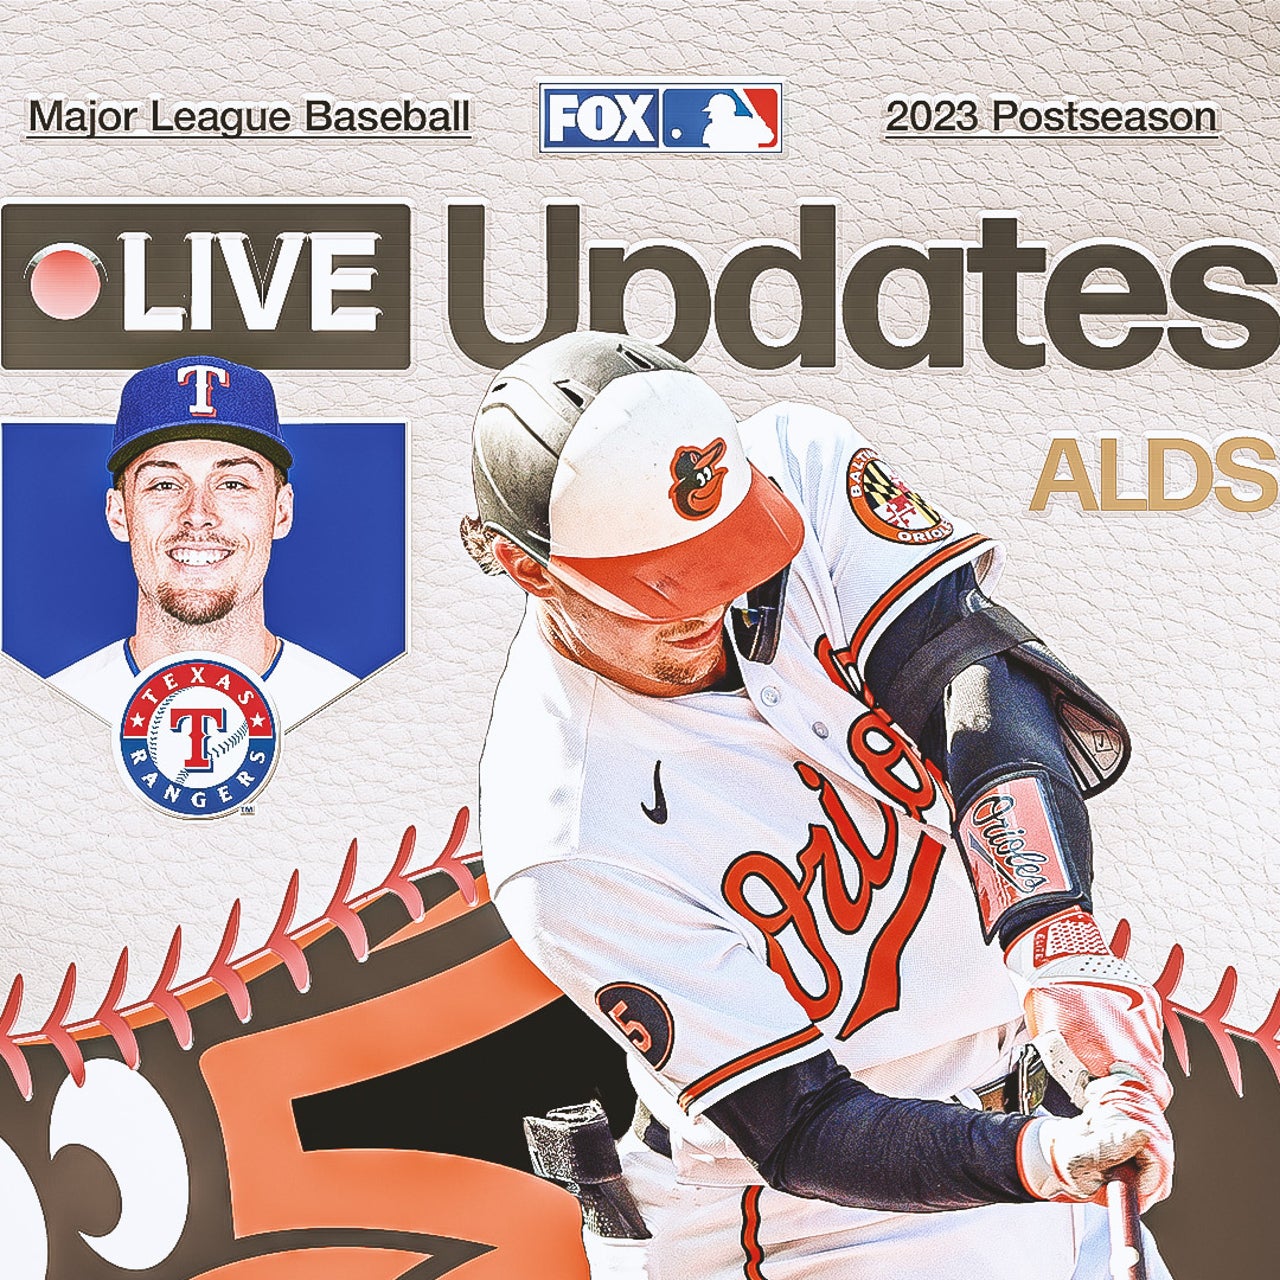 Kyle Seager  Major League Baseball, News, Scores, Highlights